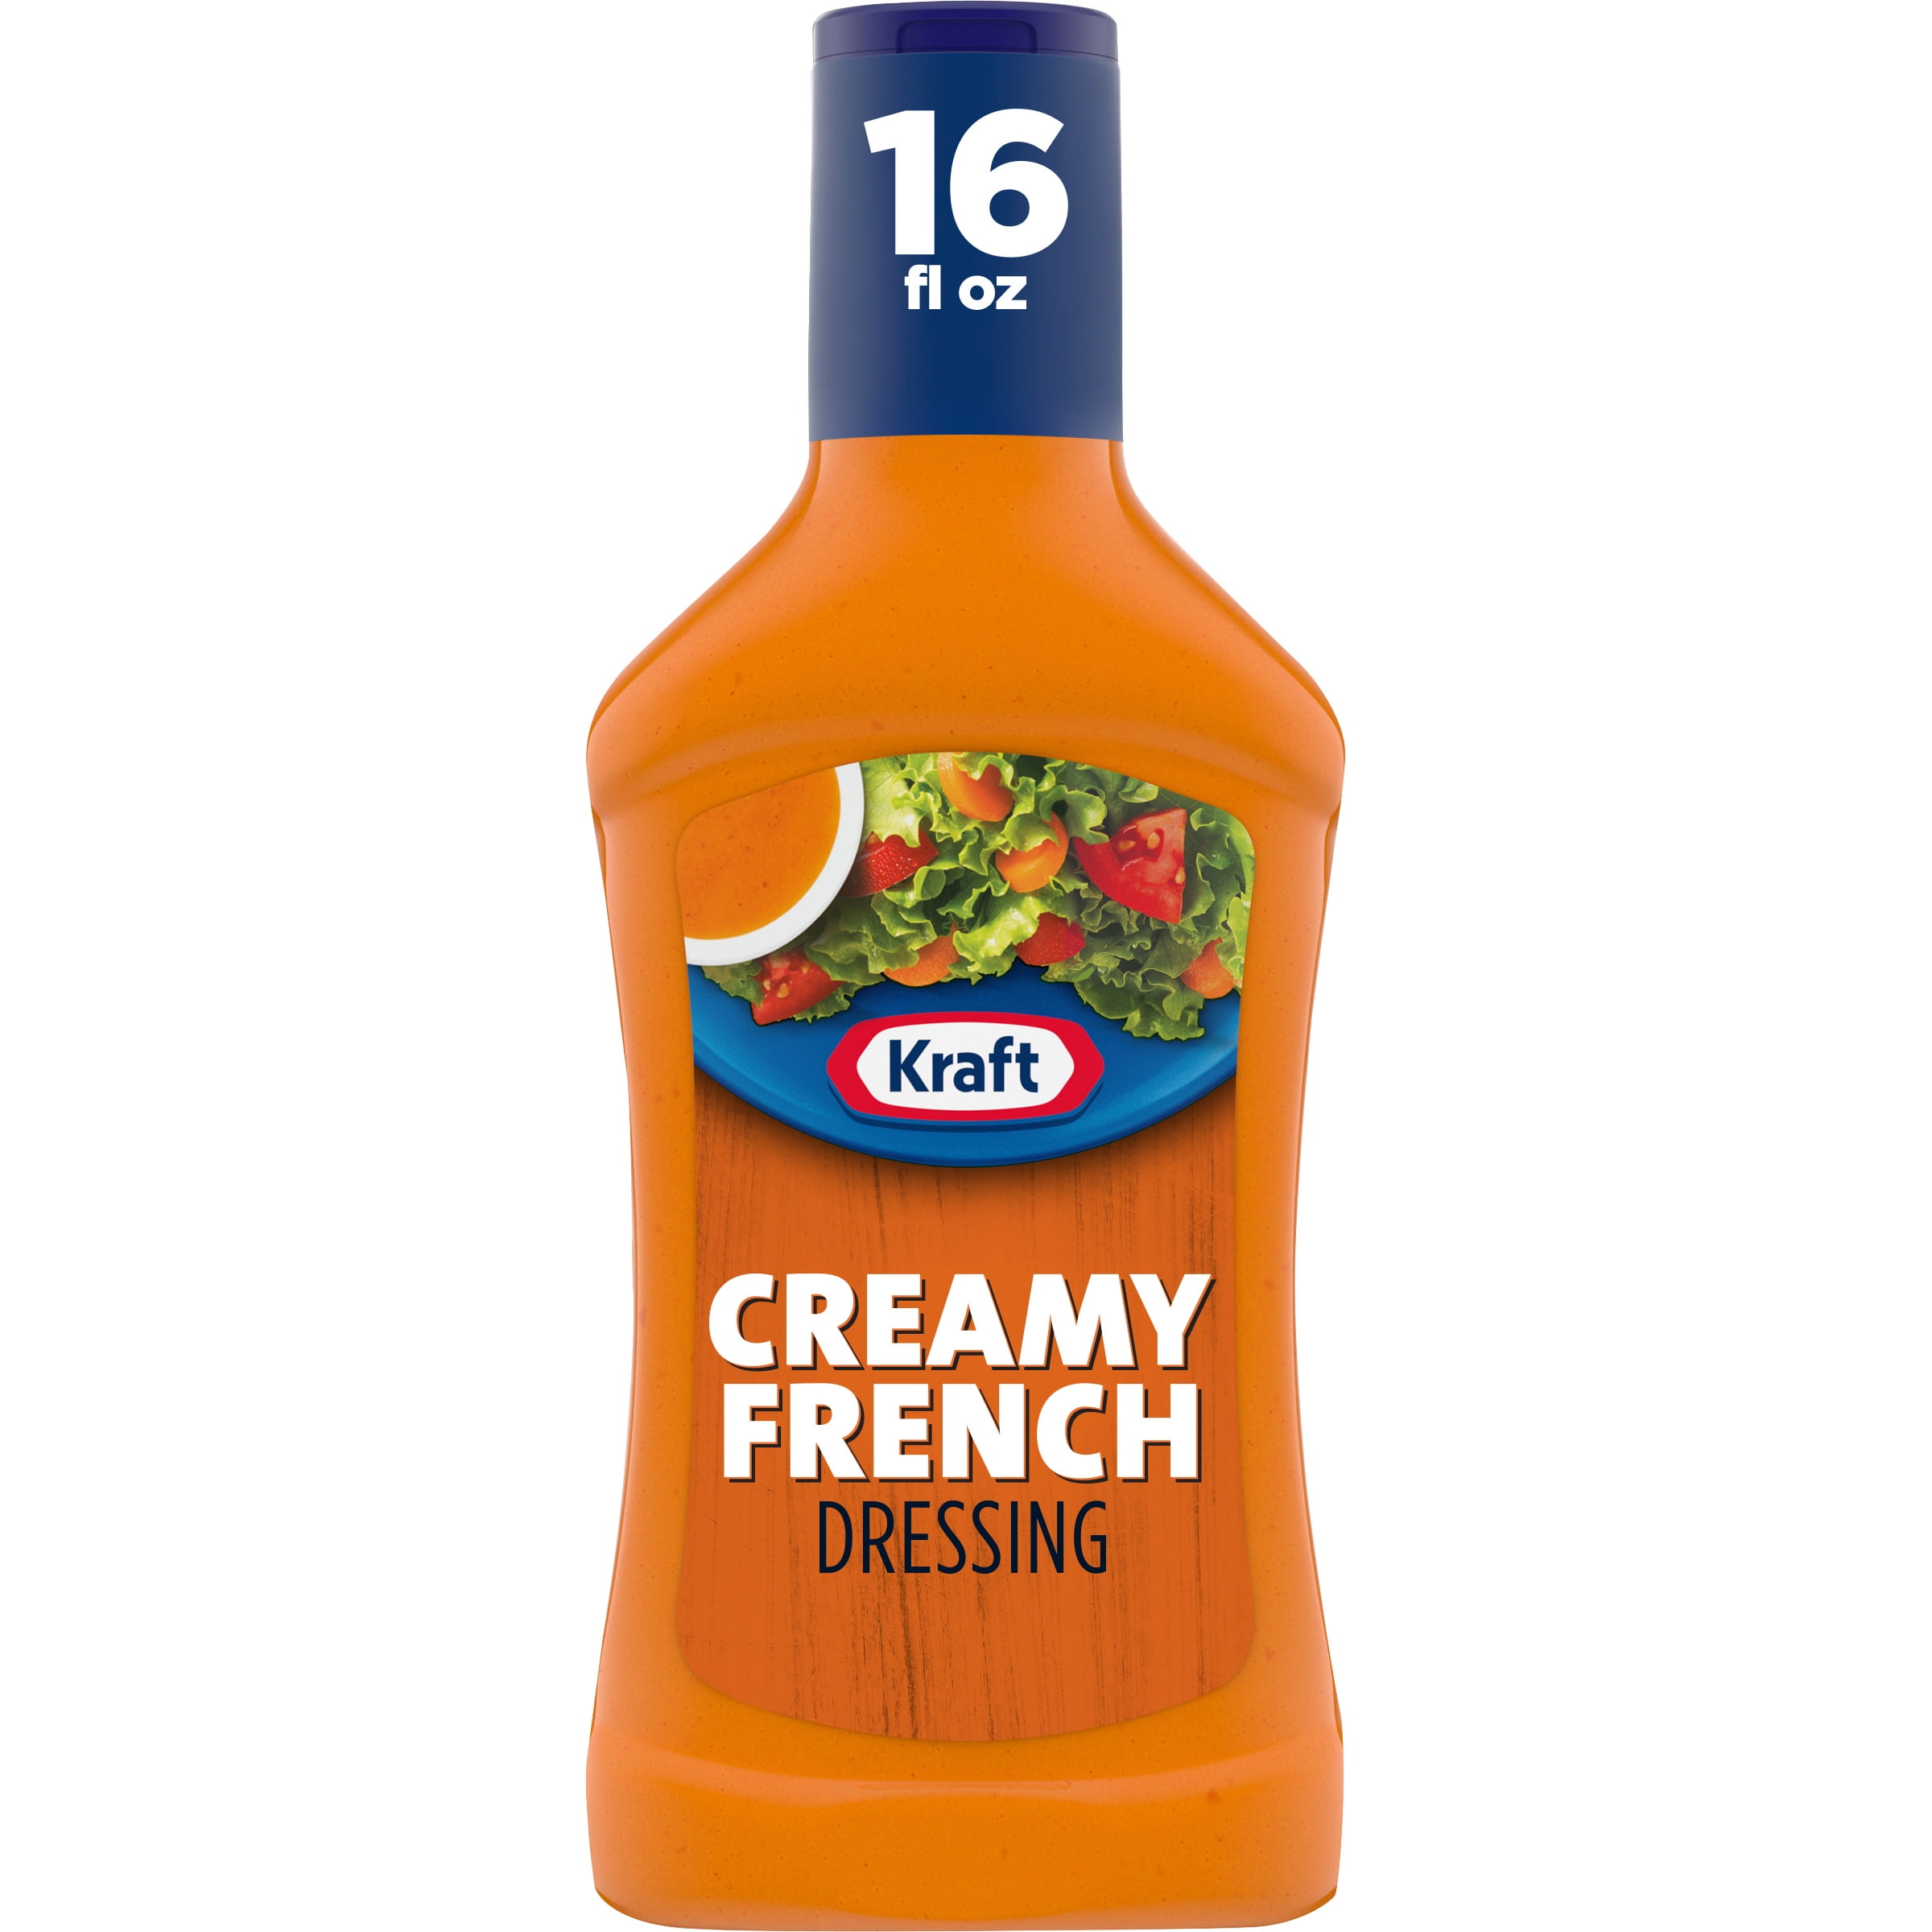 Kraft Creamy French Salad Dressing, 16 fl oz Bottle - Walmart.com ...